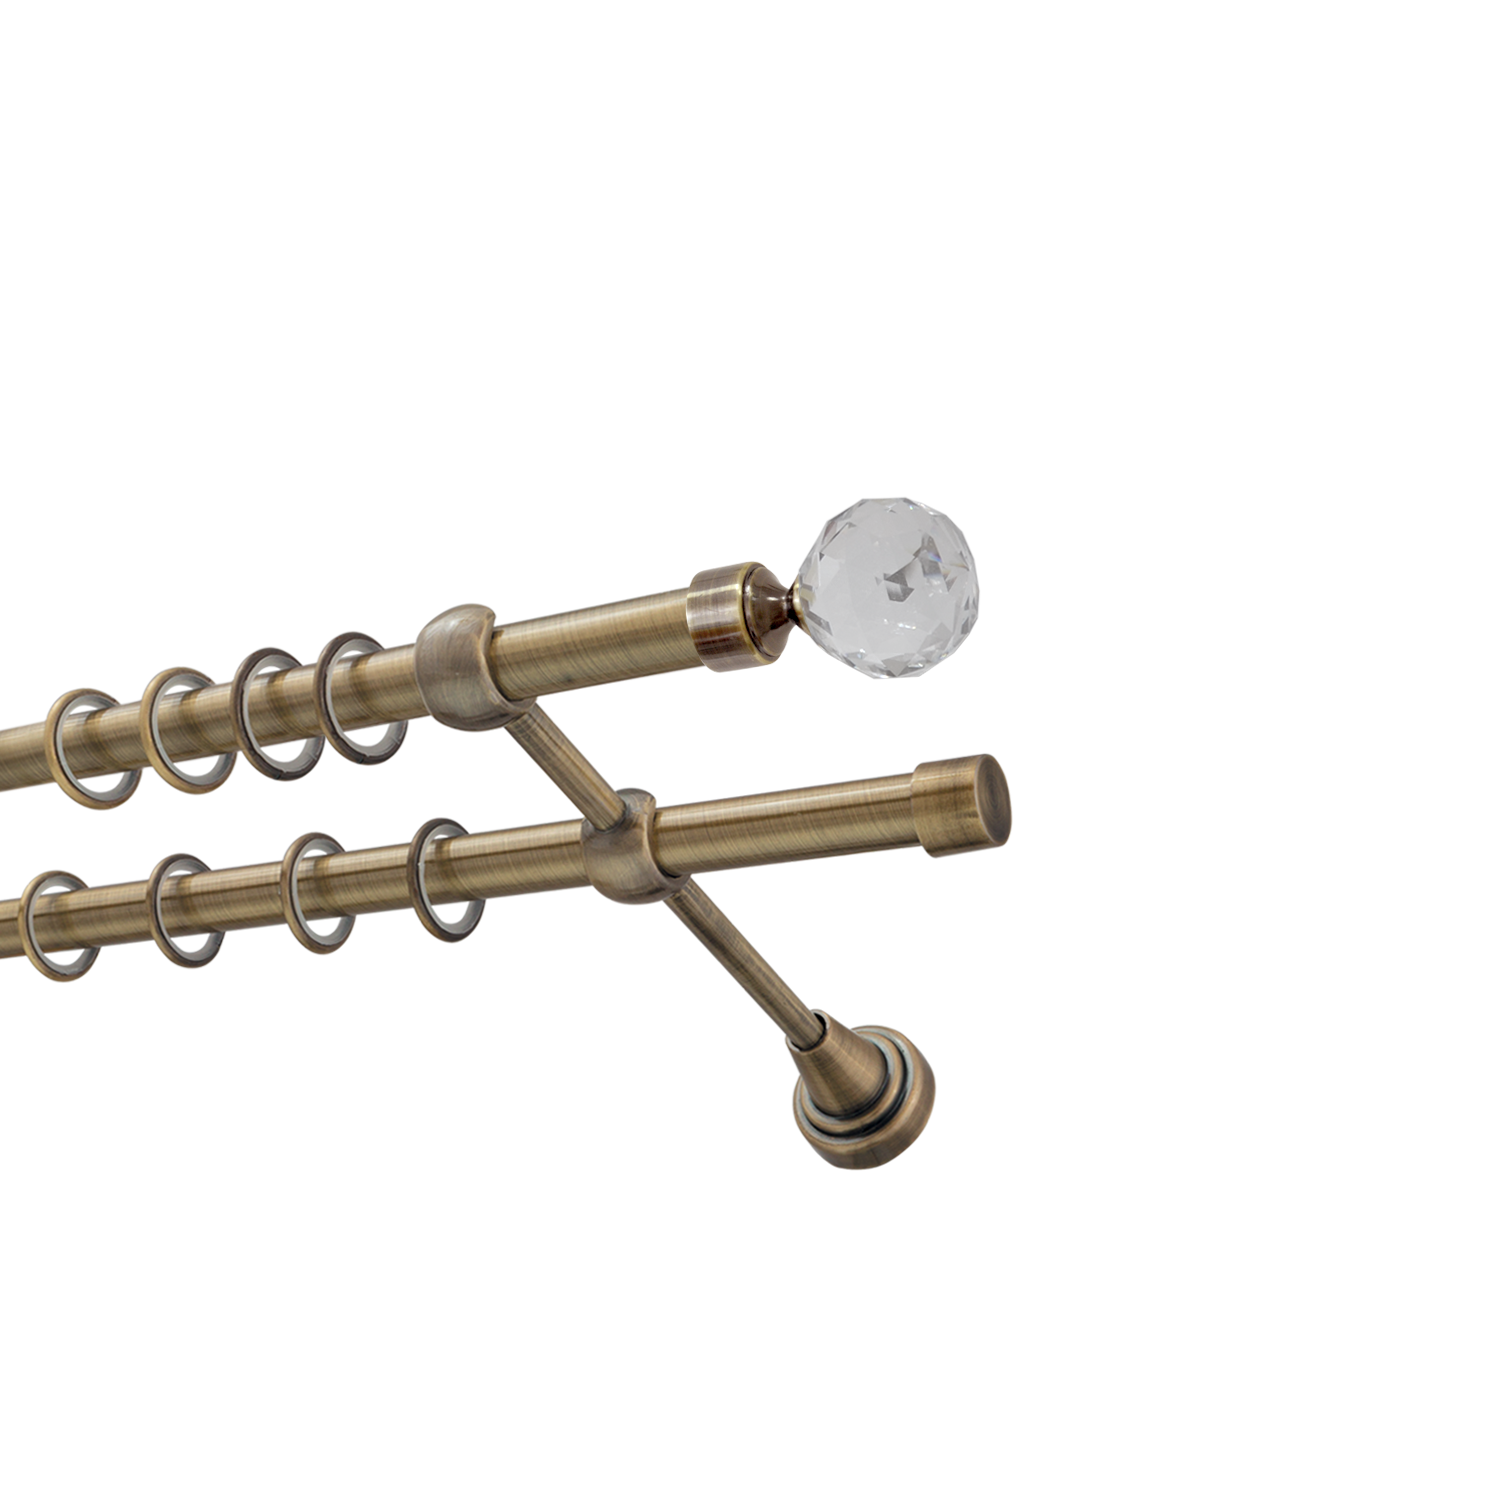 Металлический карниз для штор Карат, двухрядный 16/16 мм, бронза, гладкая штанга, длина 300 см - фото Wikidecor.ru